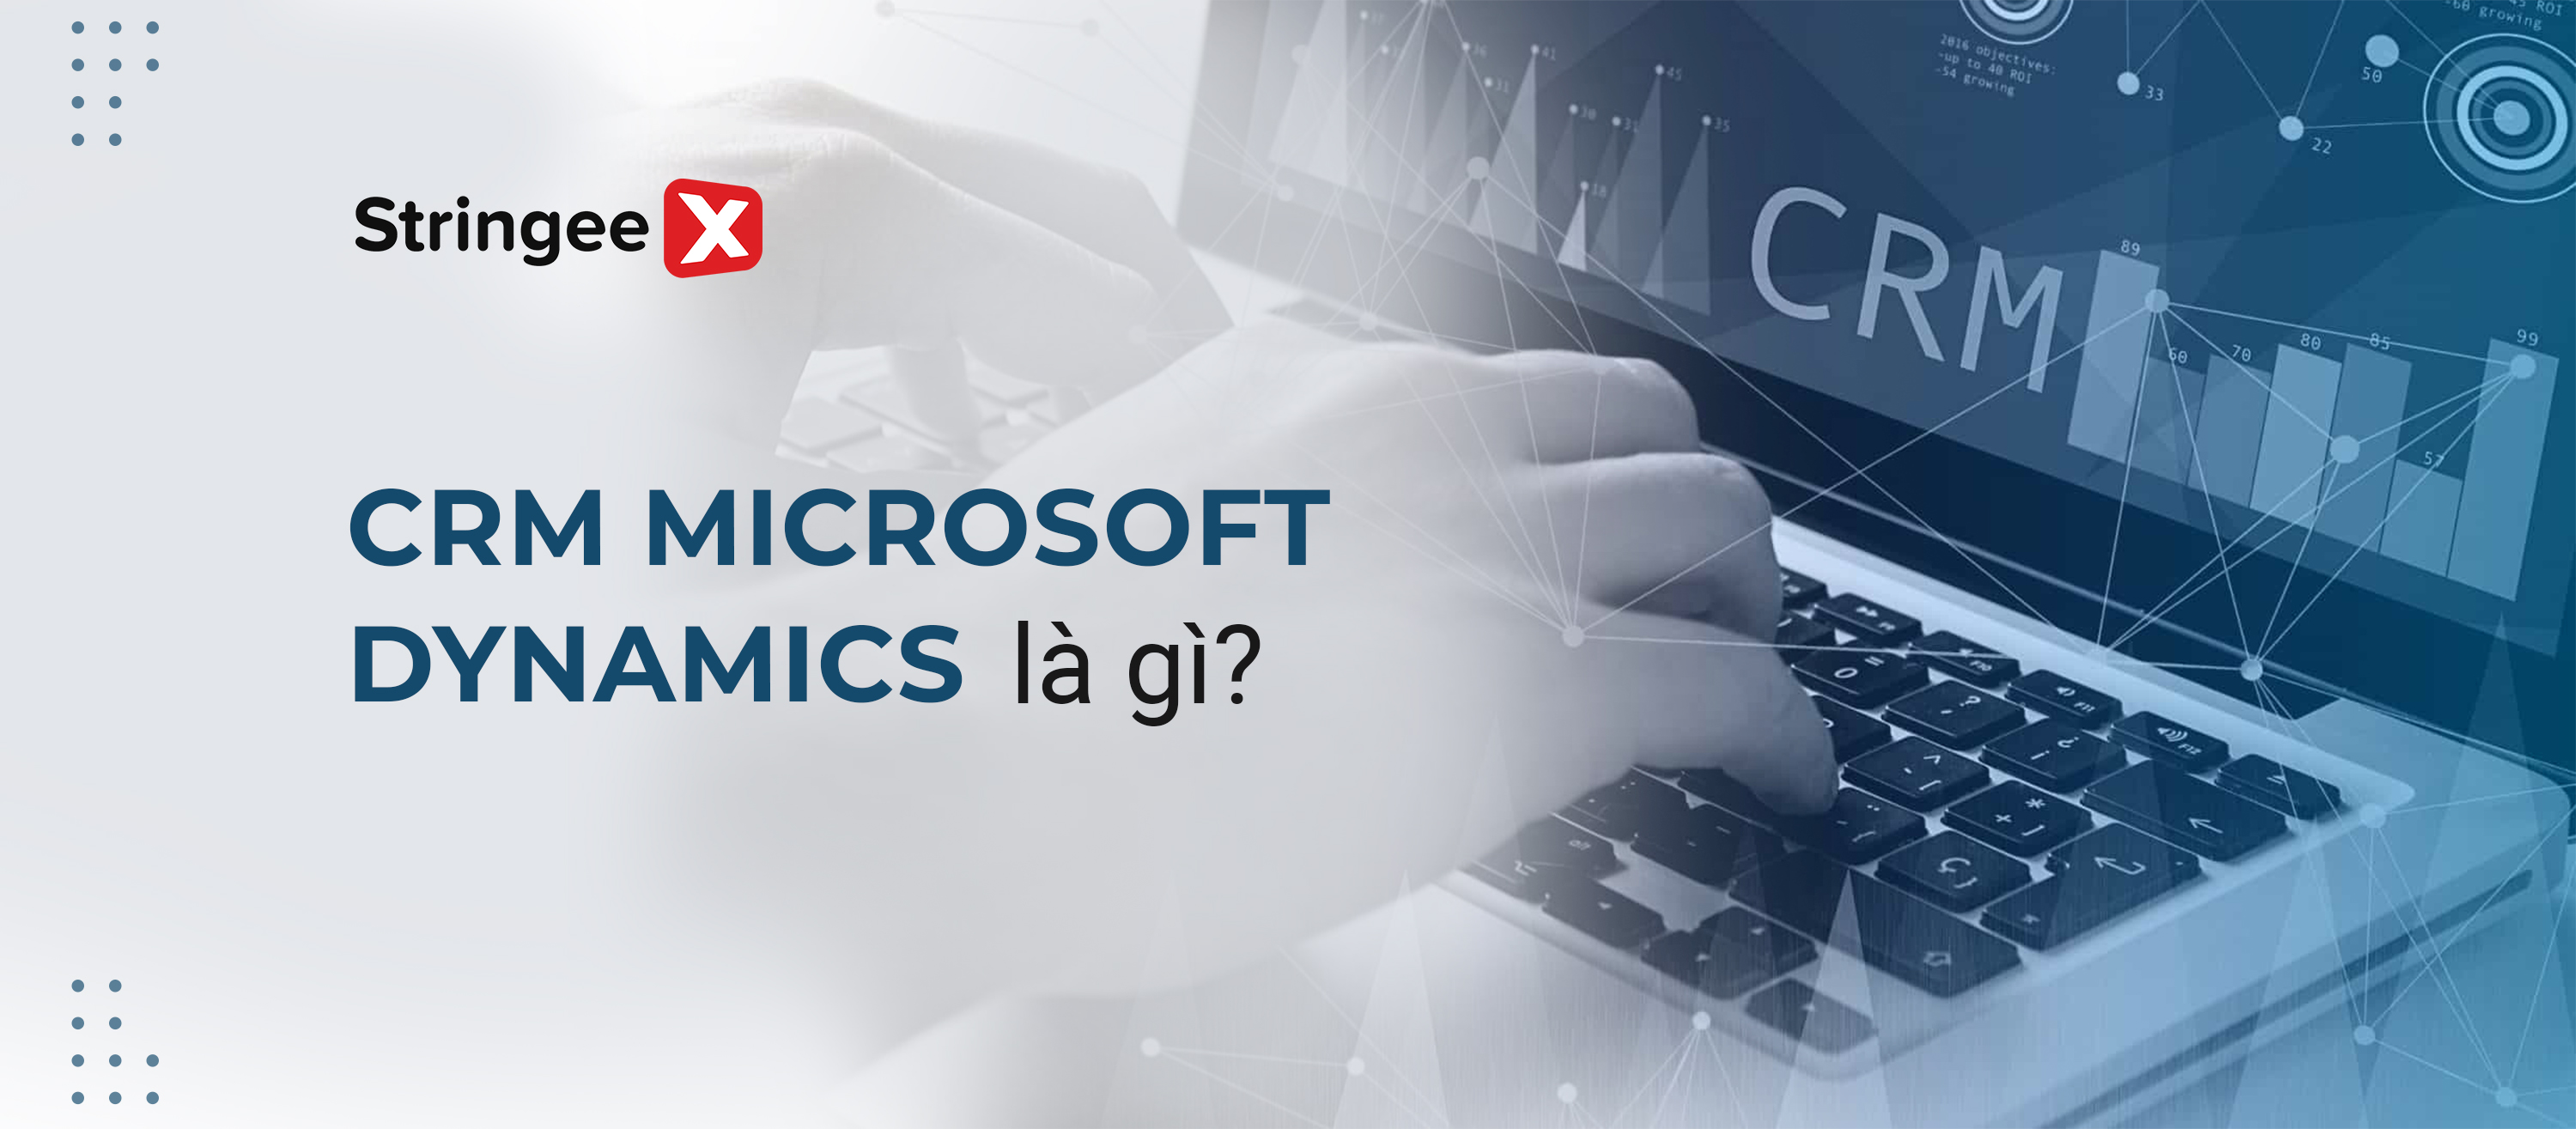 CRM Microsoft Dynamics là gì? Những tính năng nổi bật với doanh nghiệp